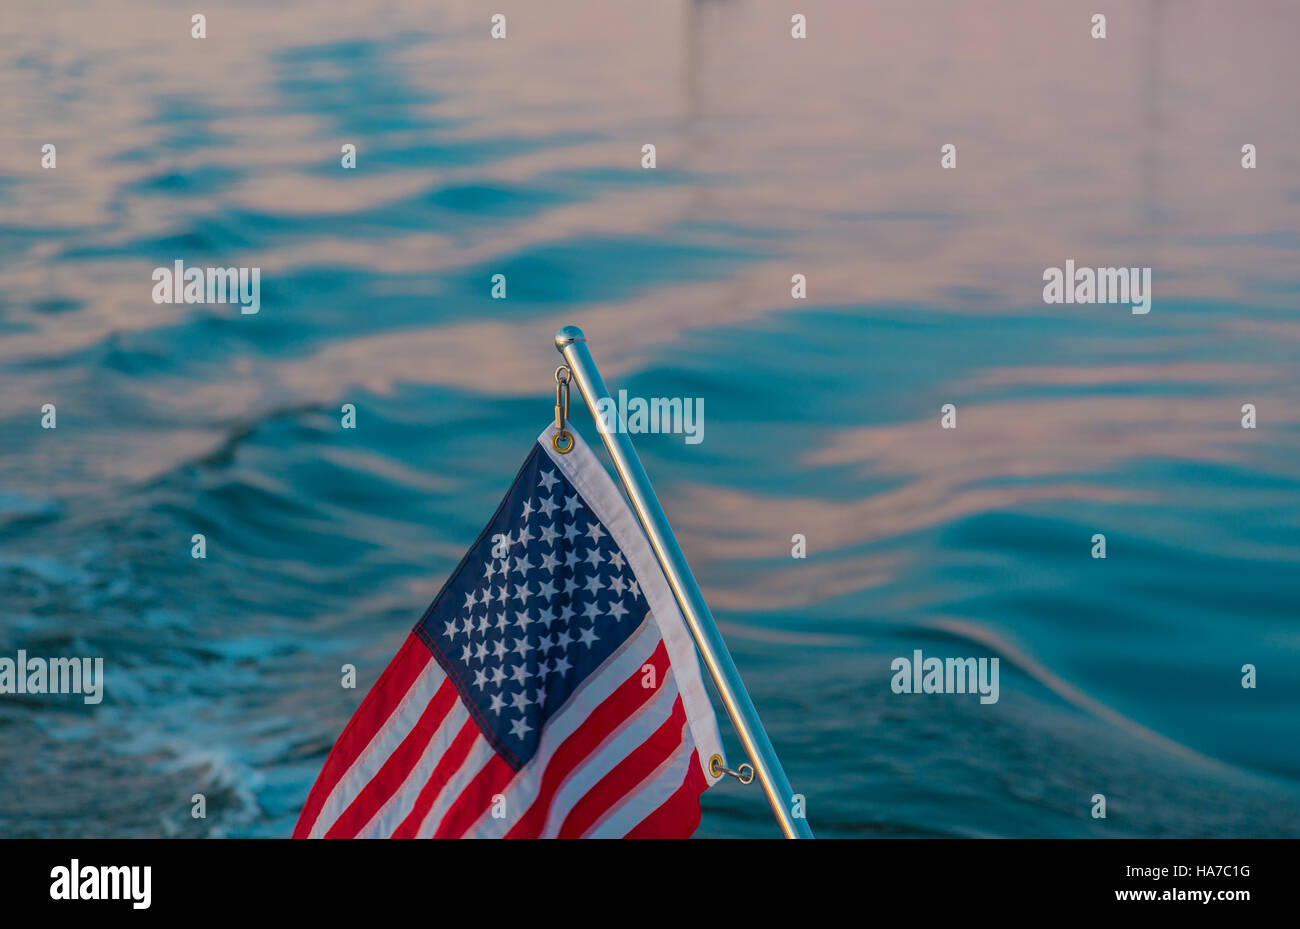 Dettaglio immagine di una bandiera americana su un acciaio inossidabile pole con acqua salata in background Foto Stock